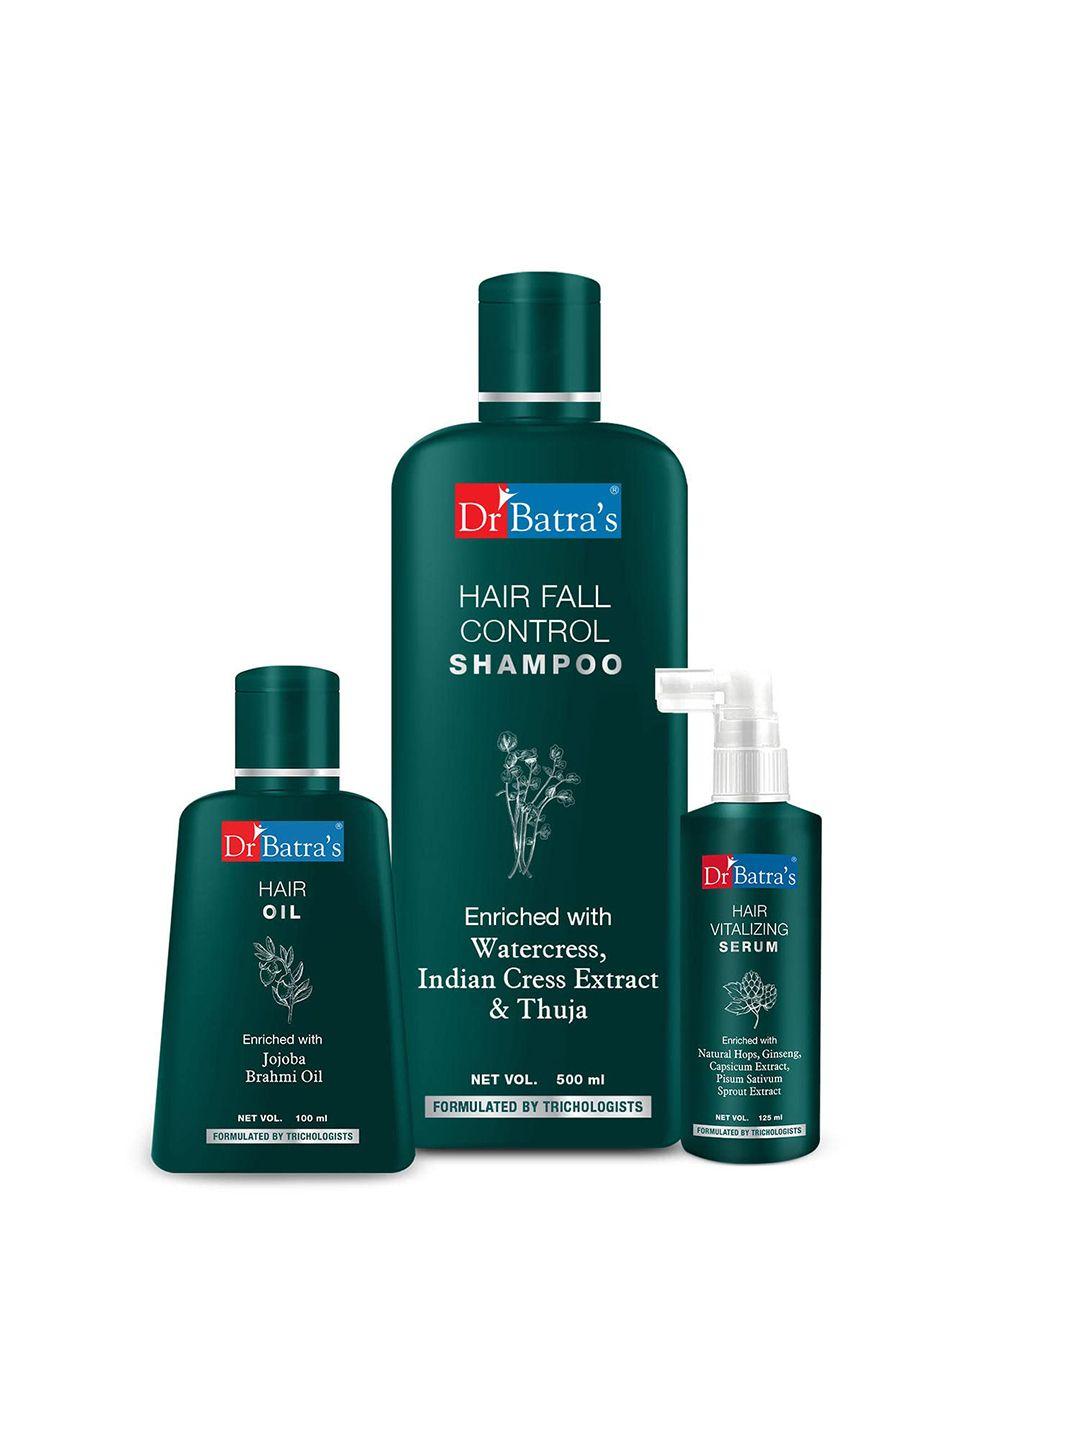 dr. batras hair vitalizing serum 125ml + hair fall control shampoo 500ml + hair oil 100ml